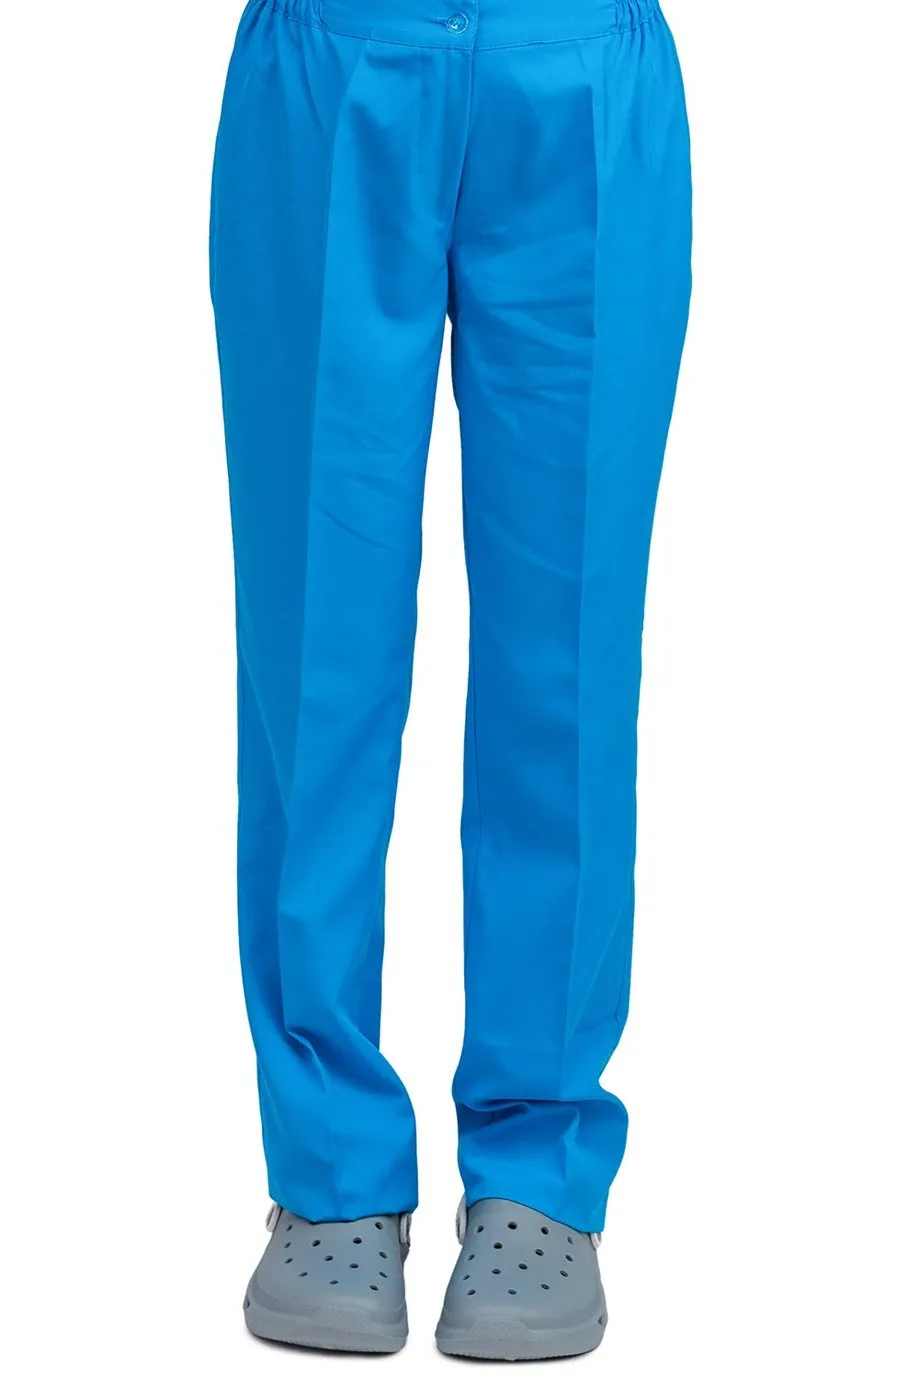 Kadın Alpaka Pantolon - 36 Saü Mavi